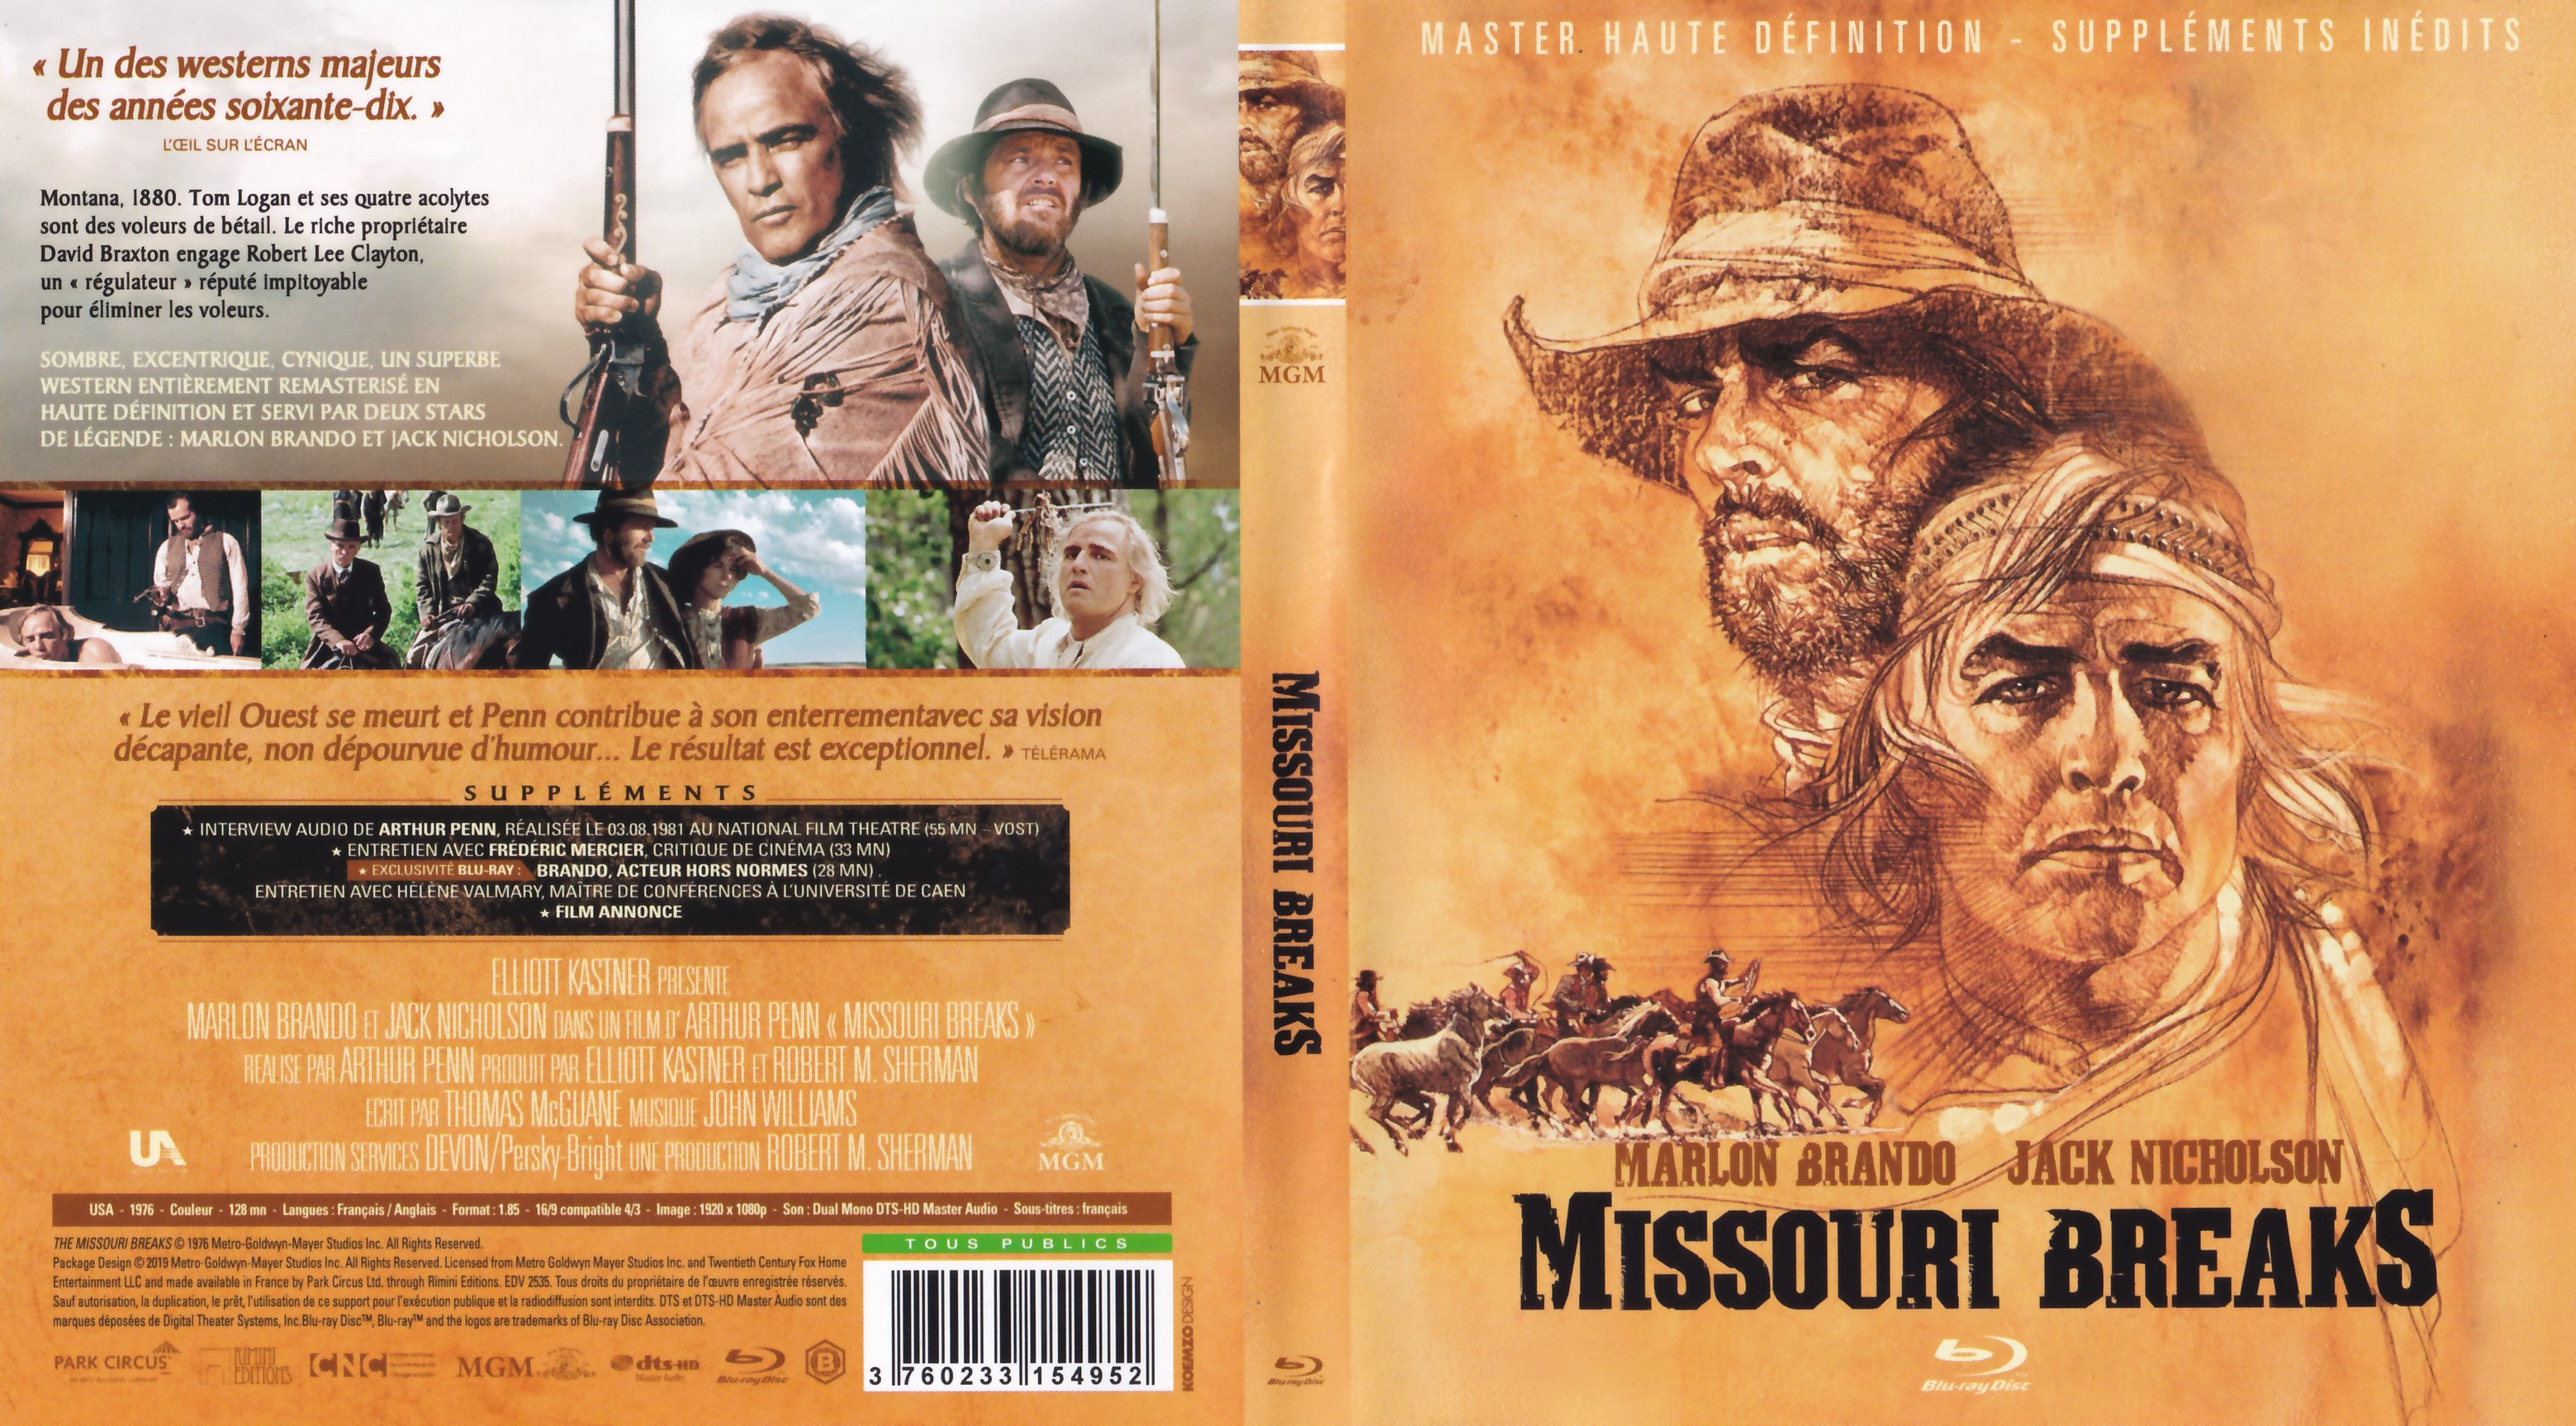 Jaquette DVD Missouri breaks (BLU-RAY)